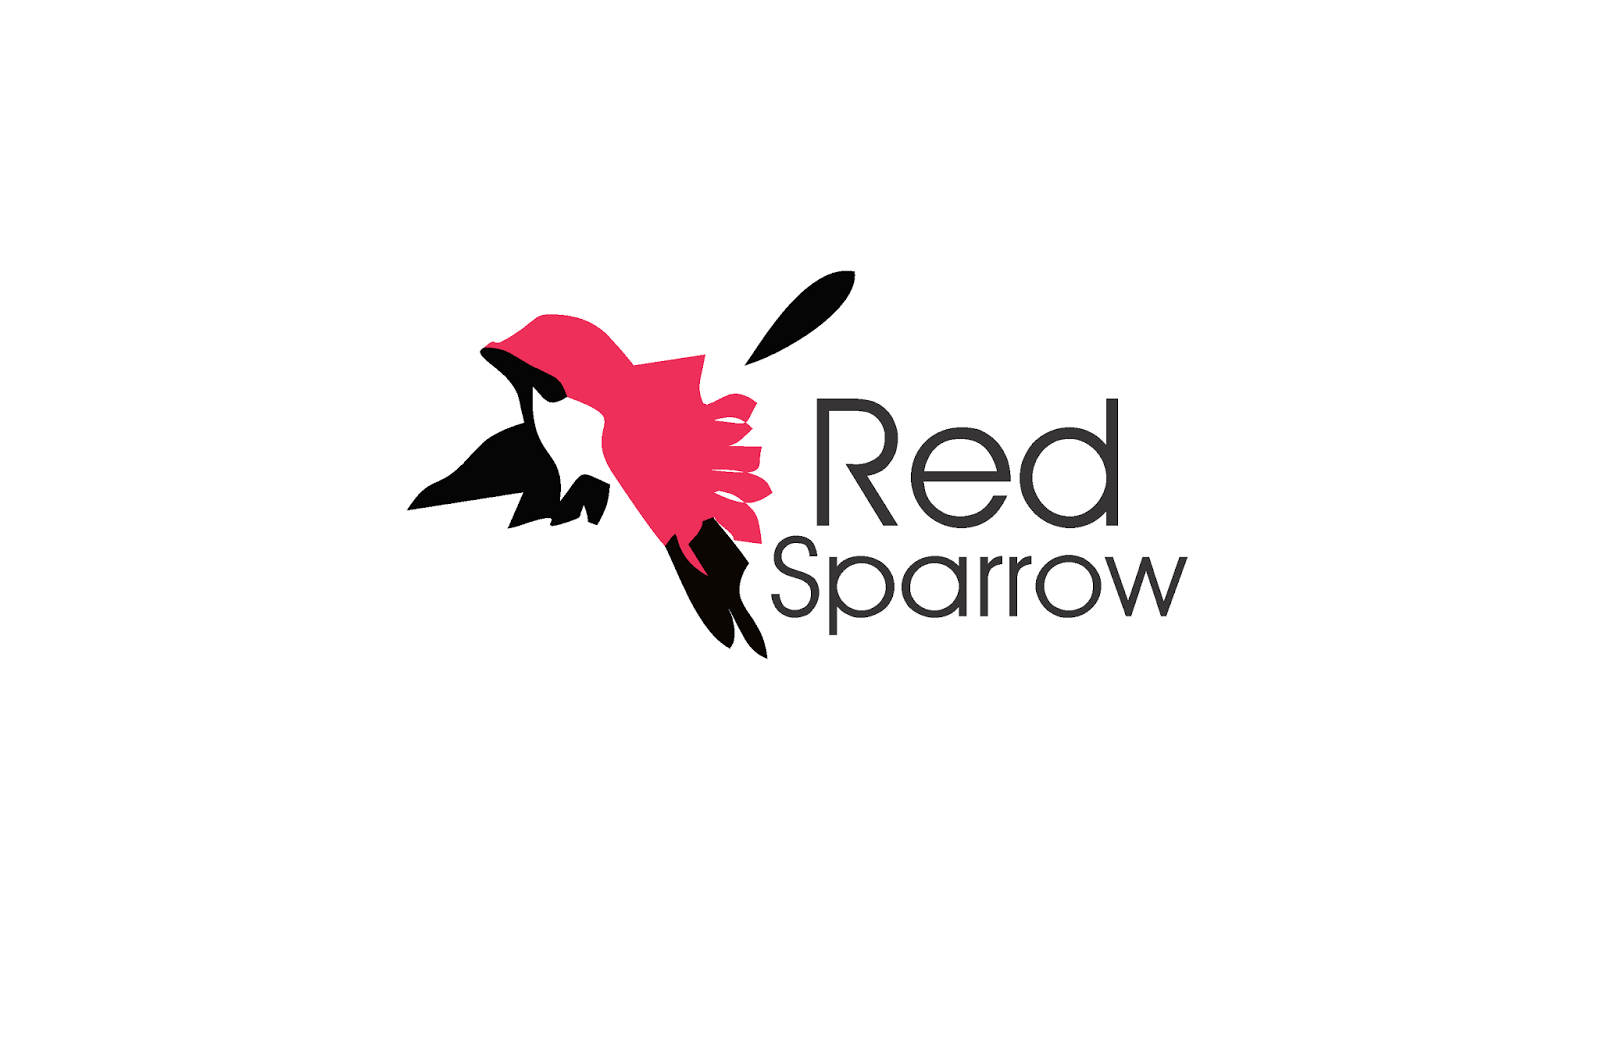 Red Fashion Logo - Red Sparrow Fashion logo | Free Logo | Pinterest | Logos, Free logo ...